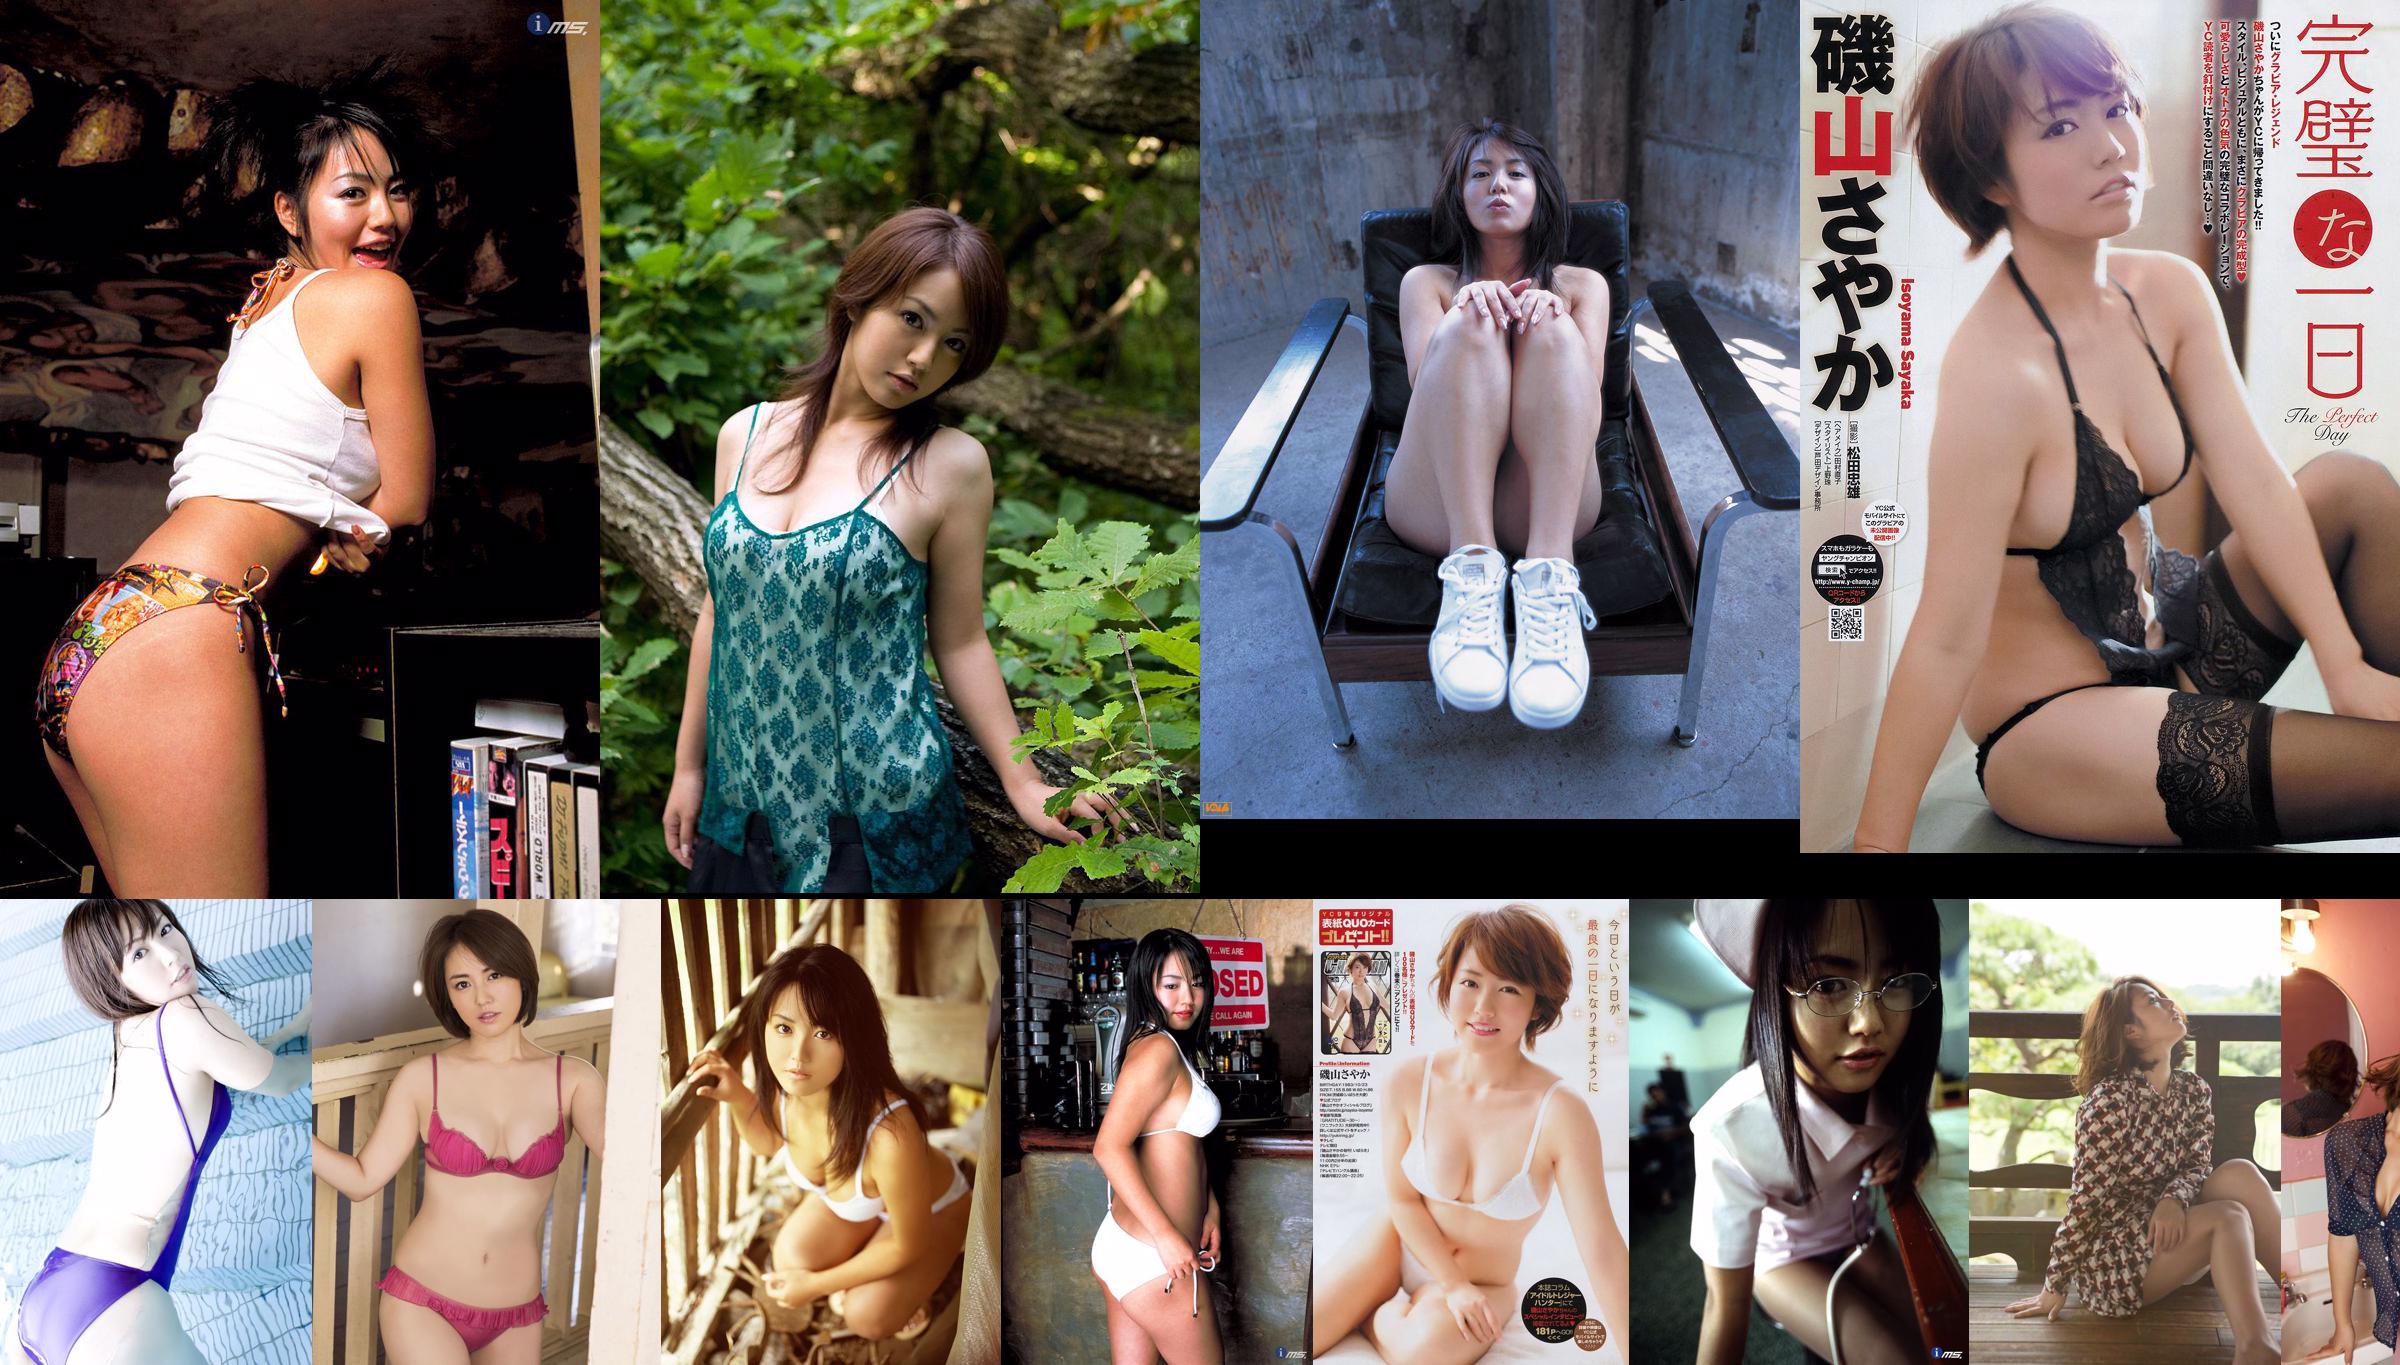 [Revista Young] Isoyama Sayaka Sato Sumire Sashihara Rino 2011 No.44 Photo Magazine No.fa3ae1 Página 1